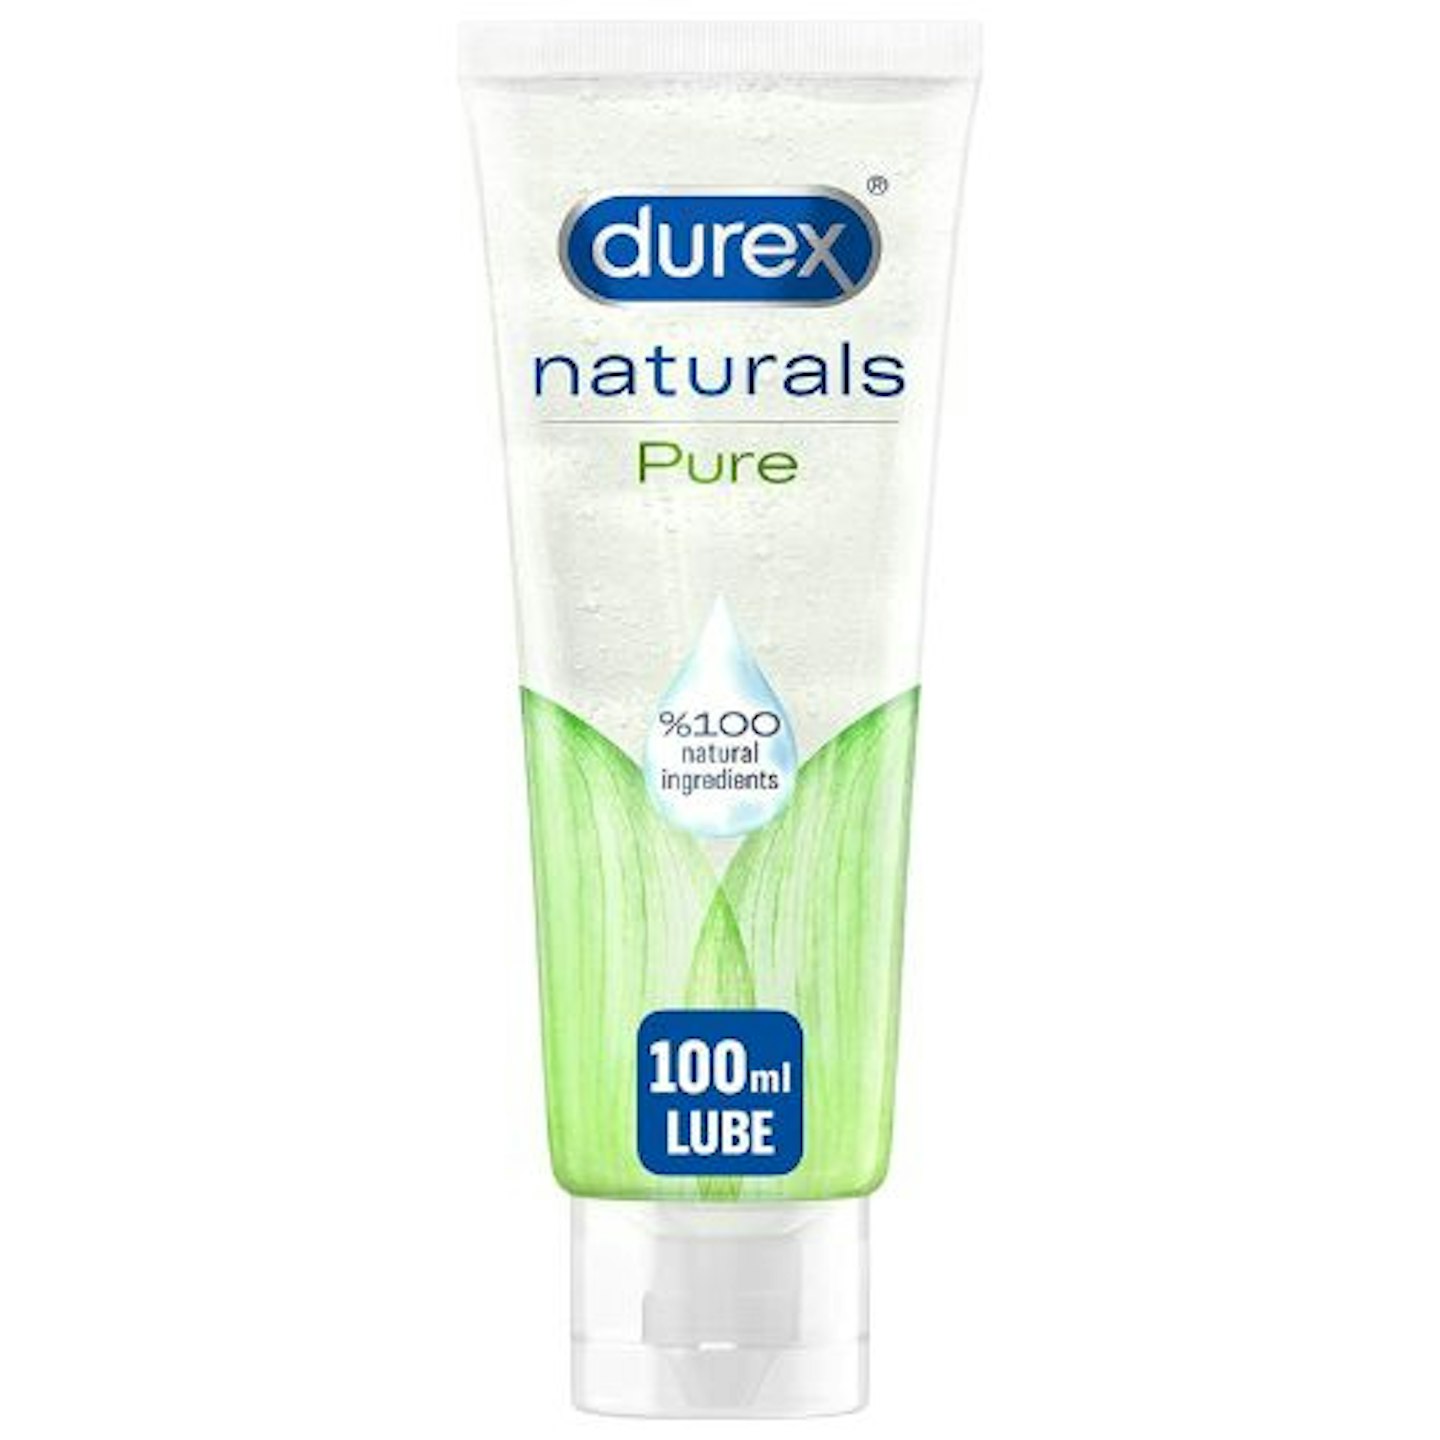 Durex Naturals Intimate Pleasure Water Based Pure Lubricant Gel